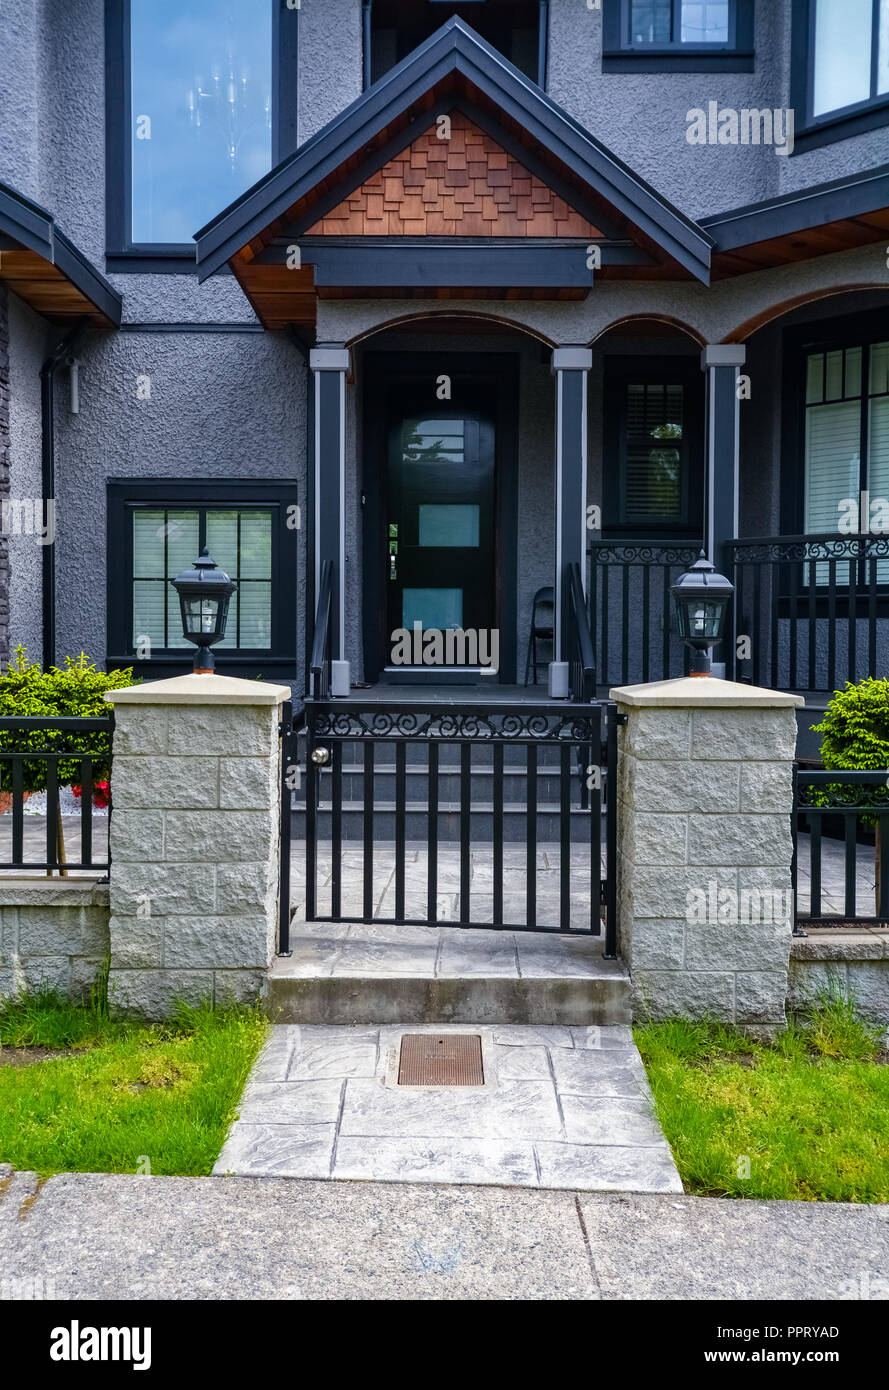 Ingresso della casa residenziale con griglia metallica cancello nella parte anteriore. Di colore scuro a casa con cancello di ingresso Foto Stock